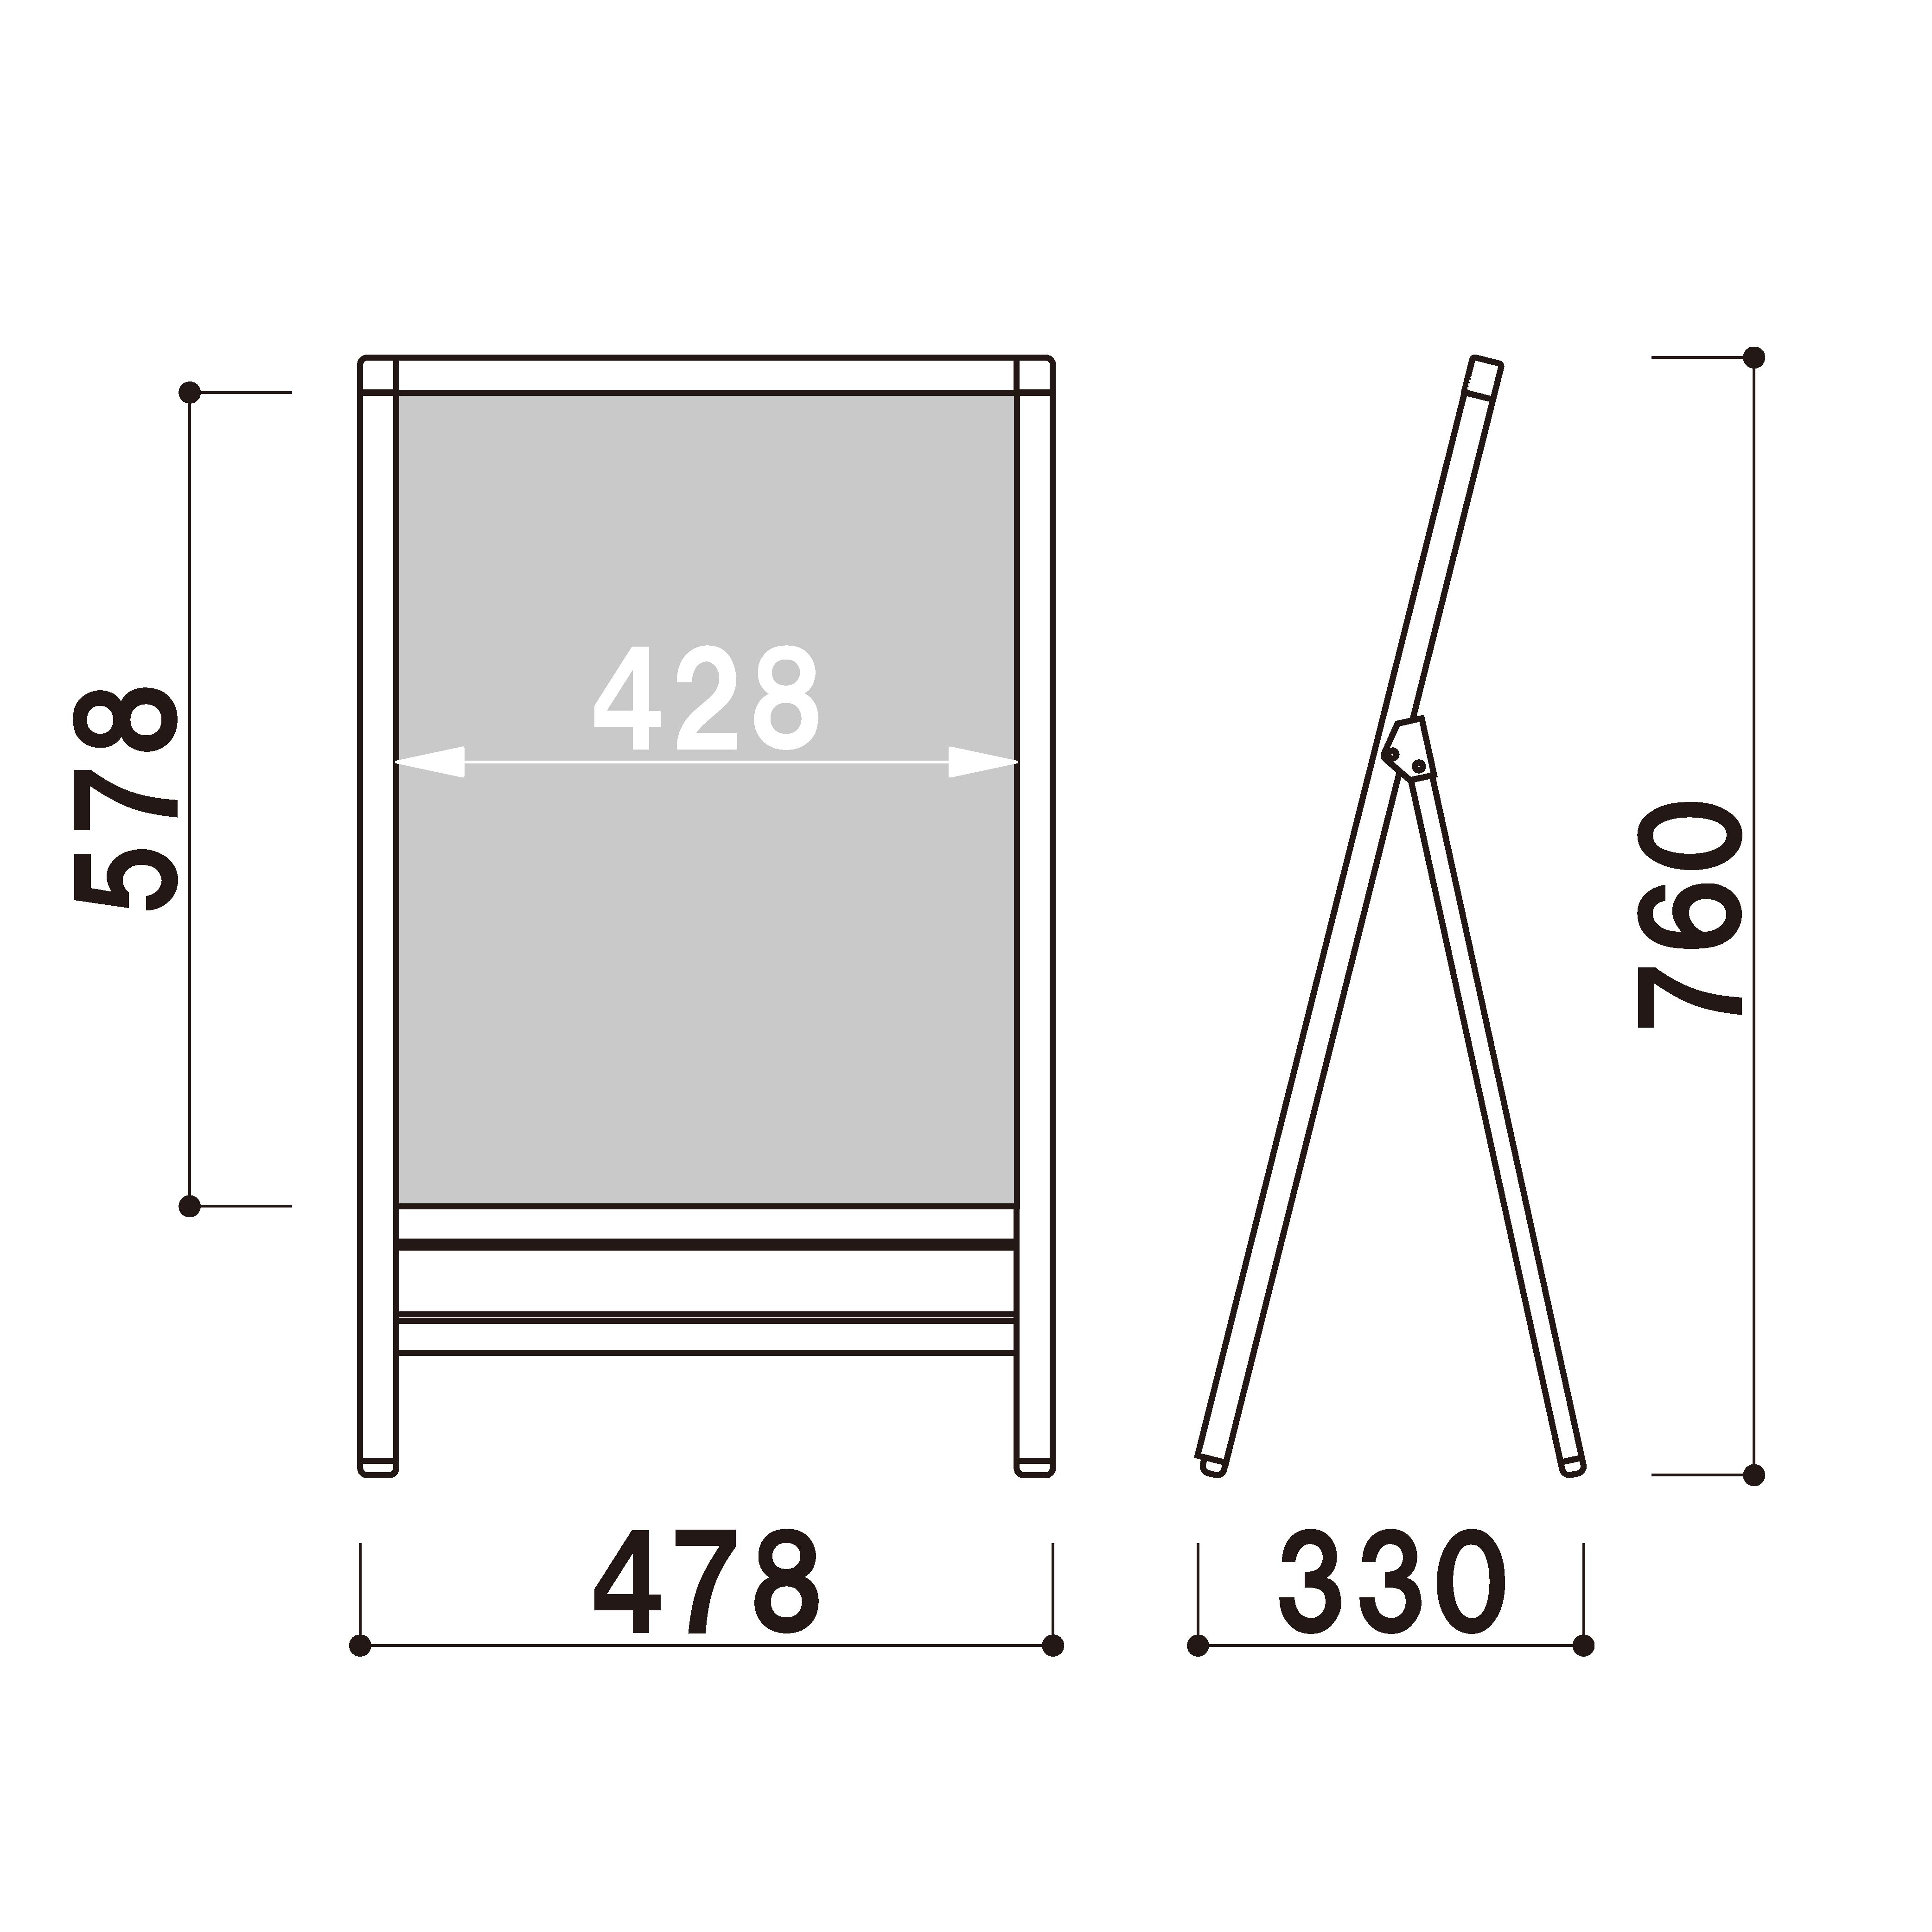 A1サイズ 片面 スタンド看板LED 通常タイプ ブラック コロナ対策 - 15